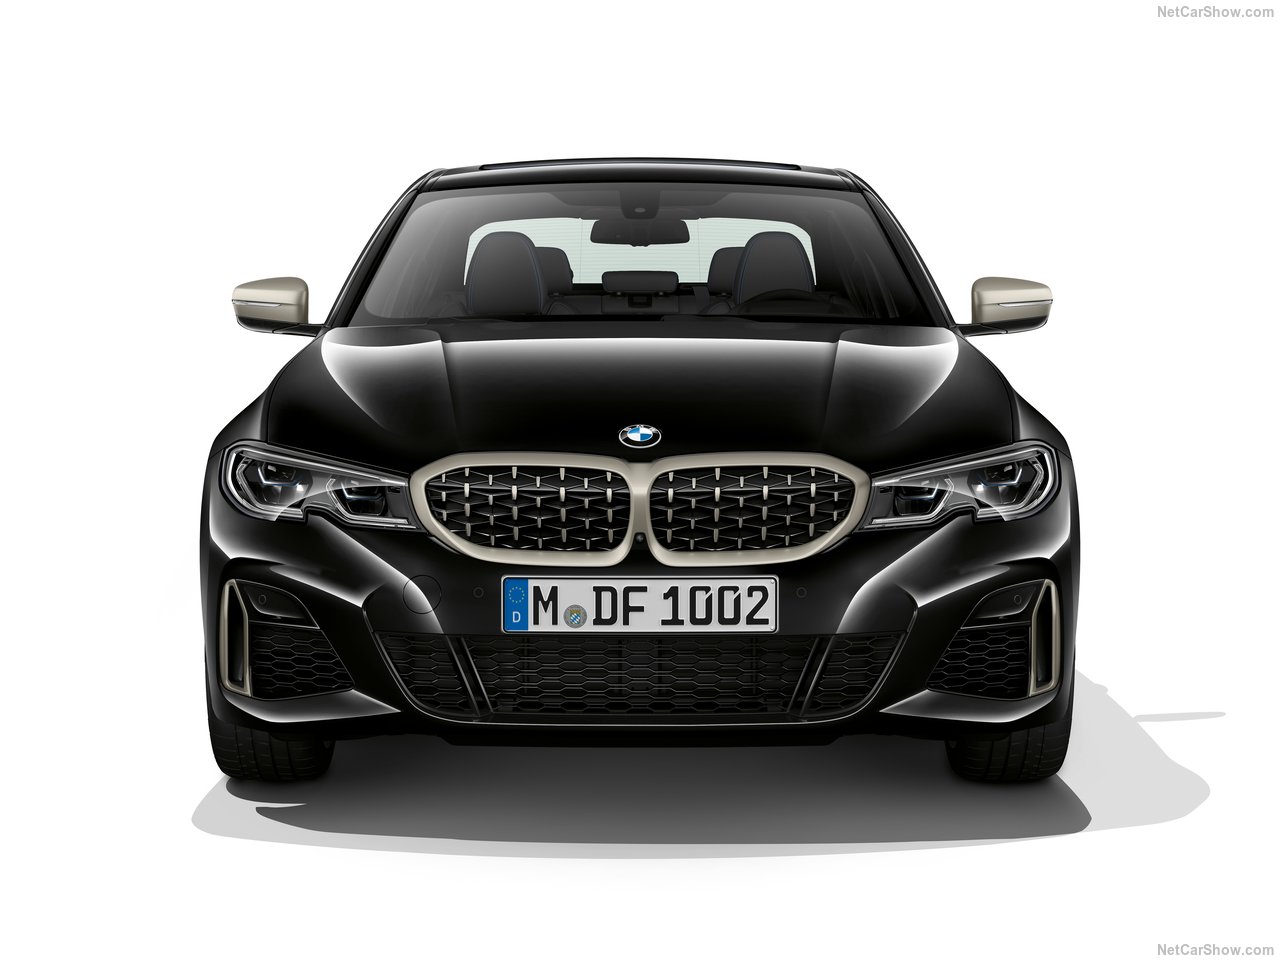 2020 BMW M340i xDrive Sedan ortaya çıktı! Yeni BMW M340i xDrive Sedan’ın özellikleri neler?